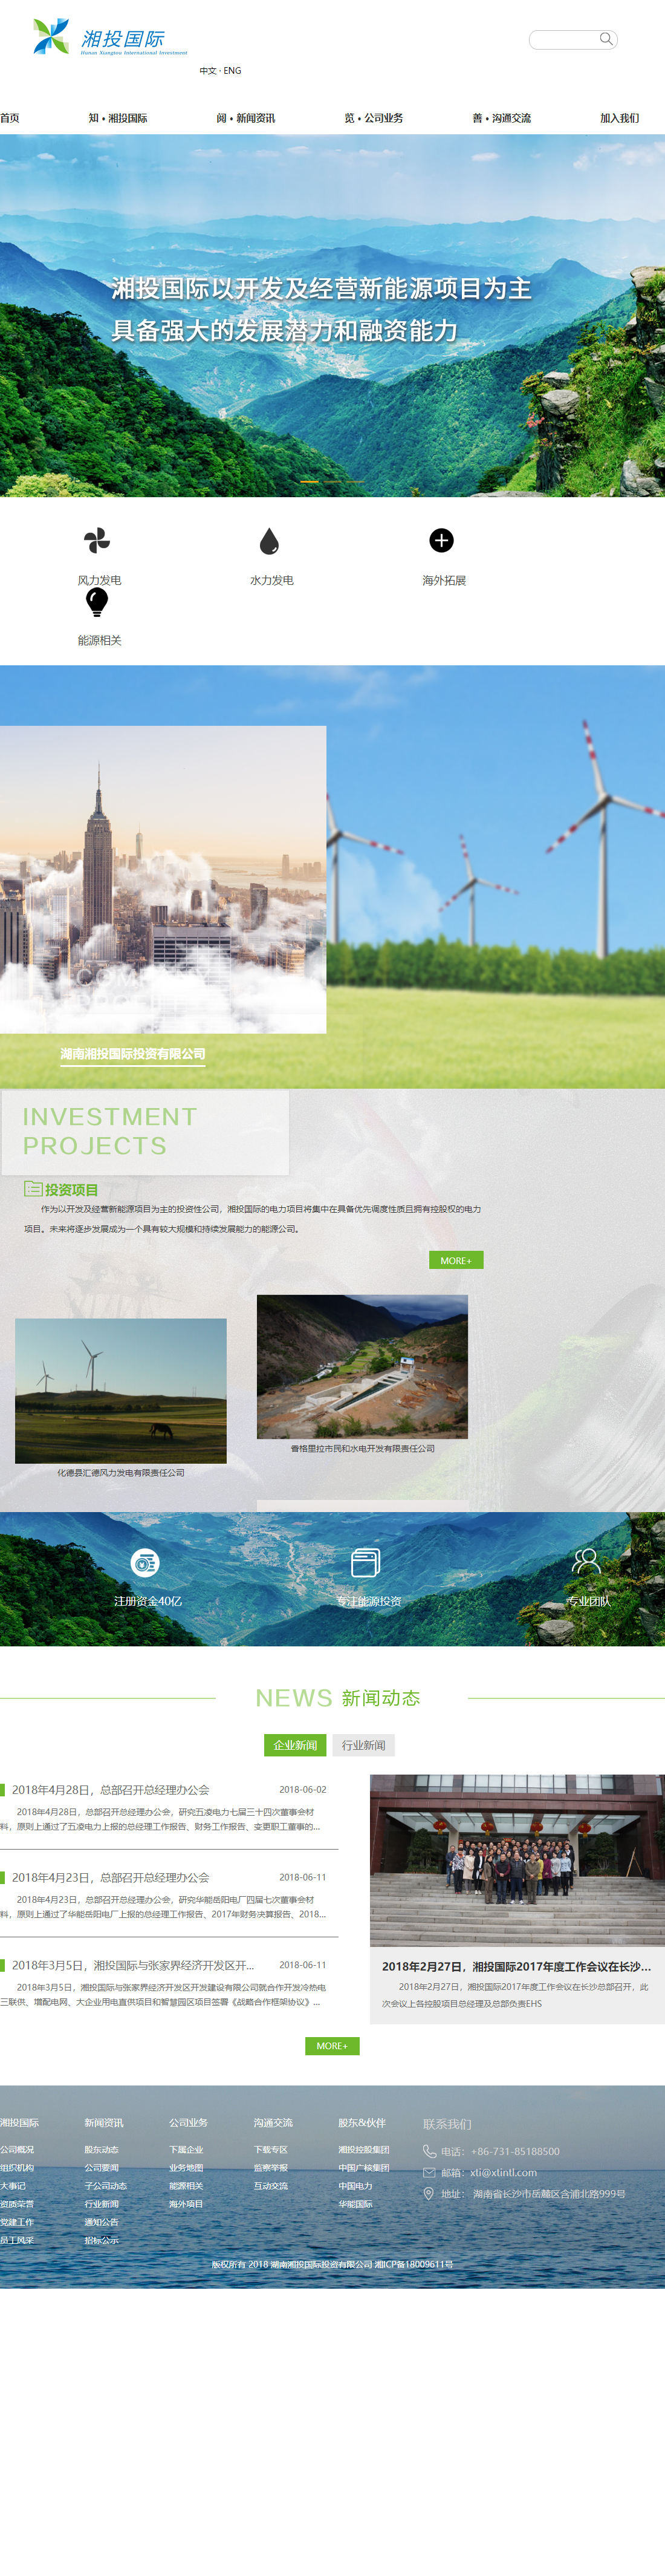 湖南湘投国际投资有限公司网站案例